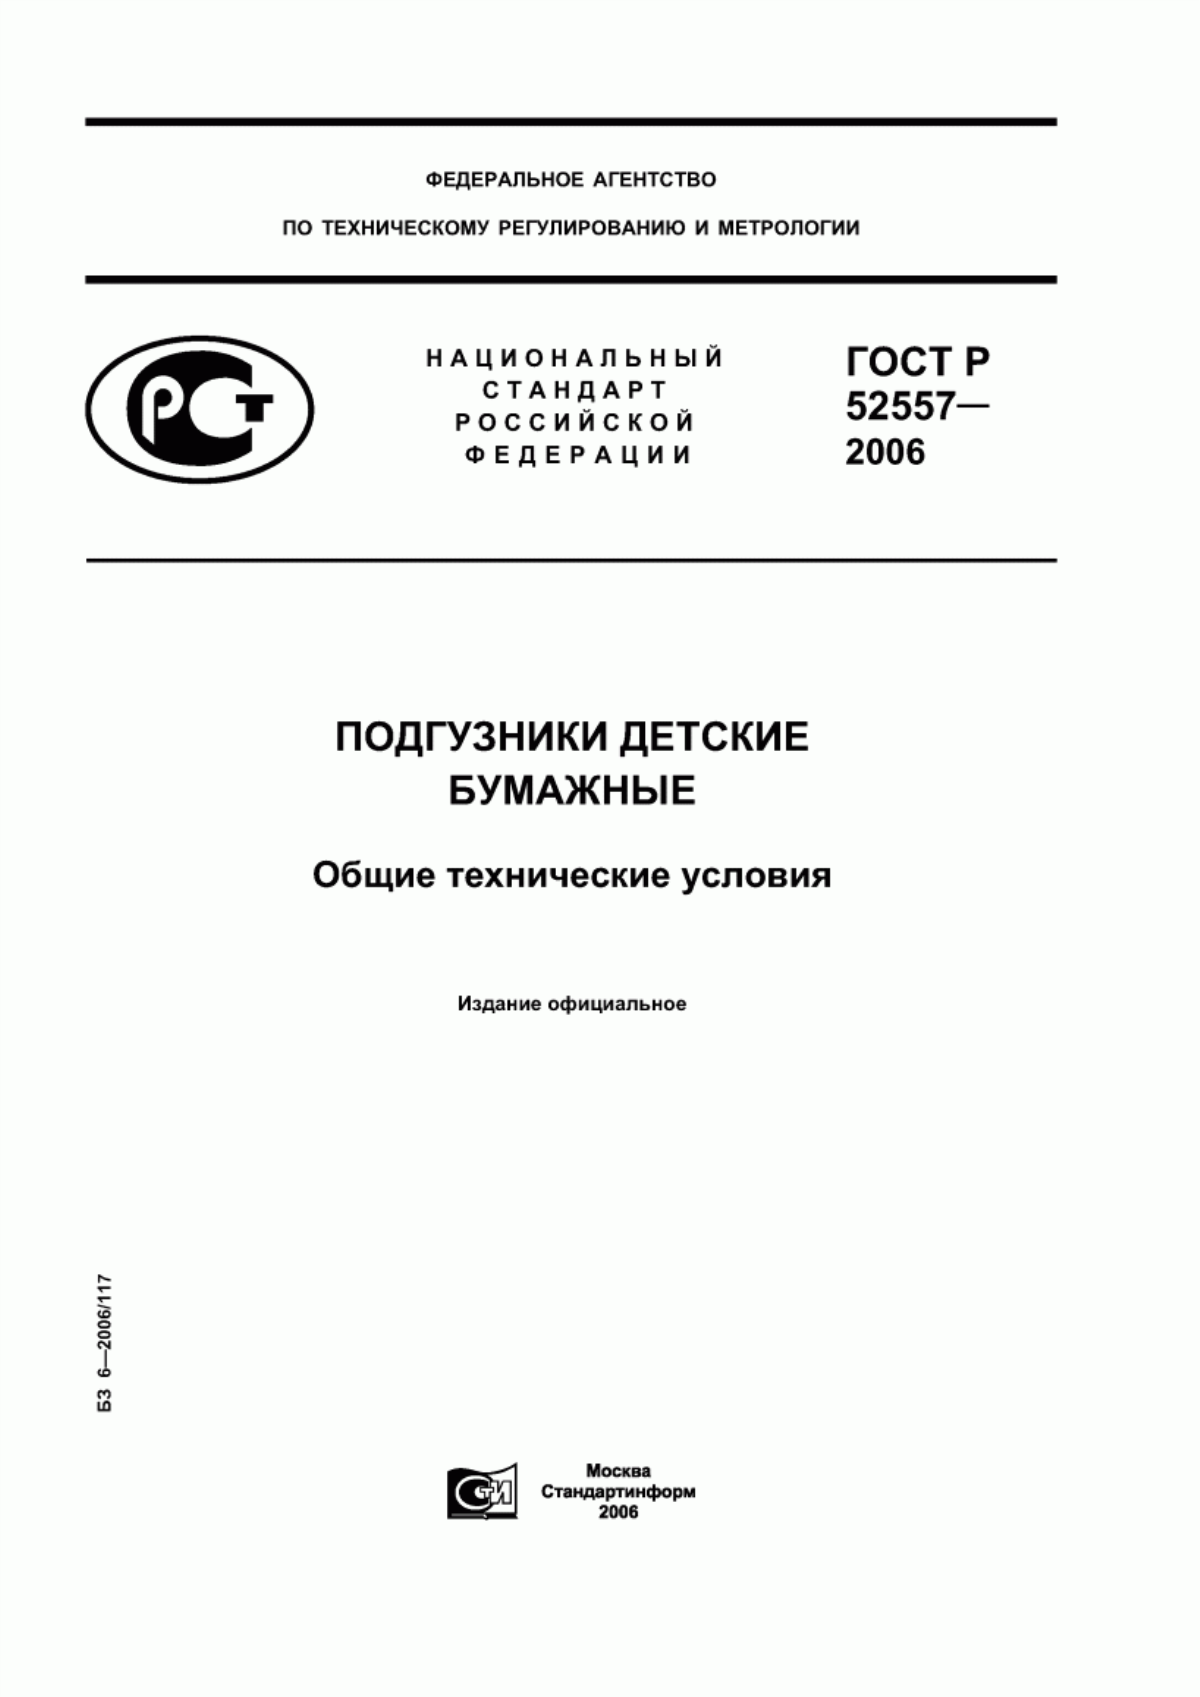 ГОСТ Р 52557-2006 Подгузники детские бумажные. Общие технические условия